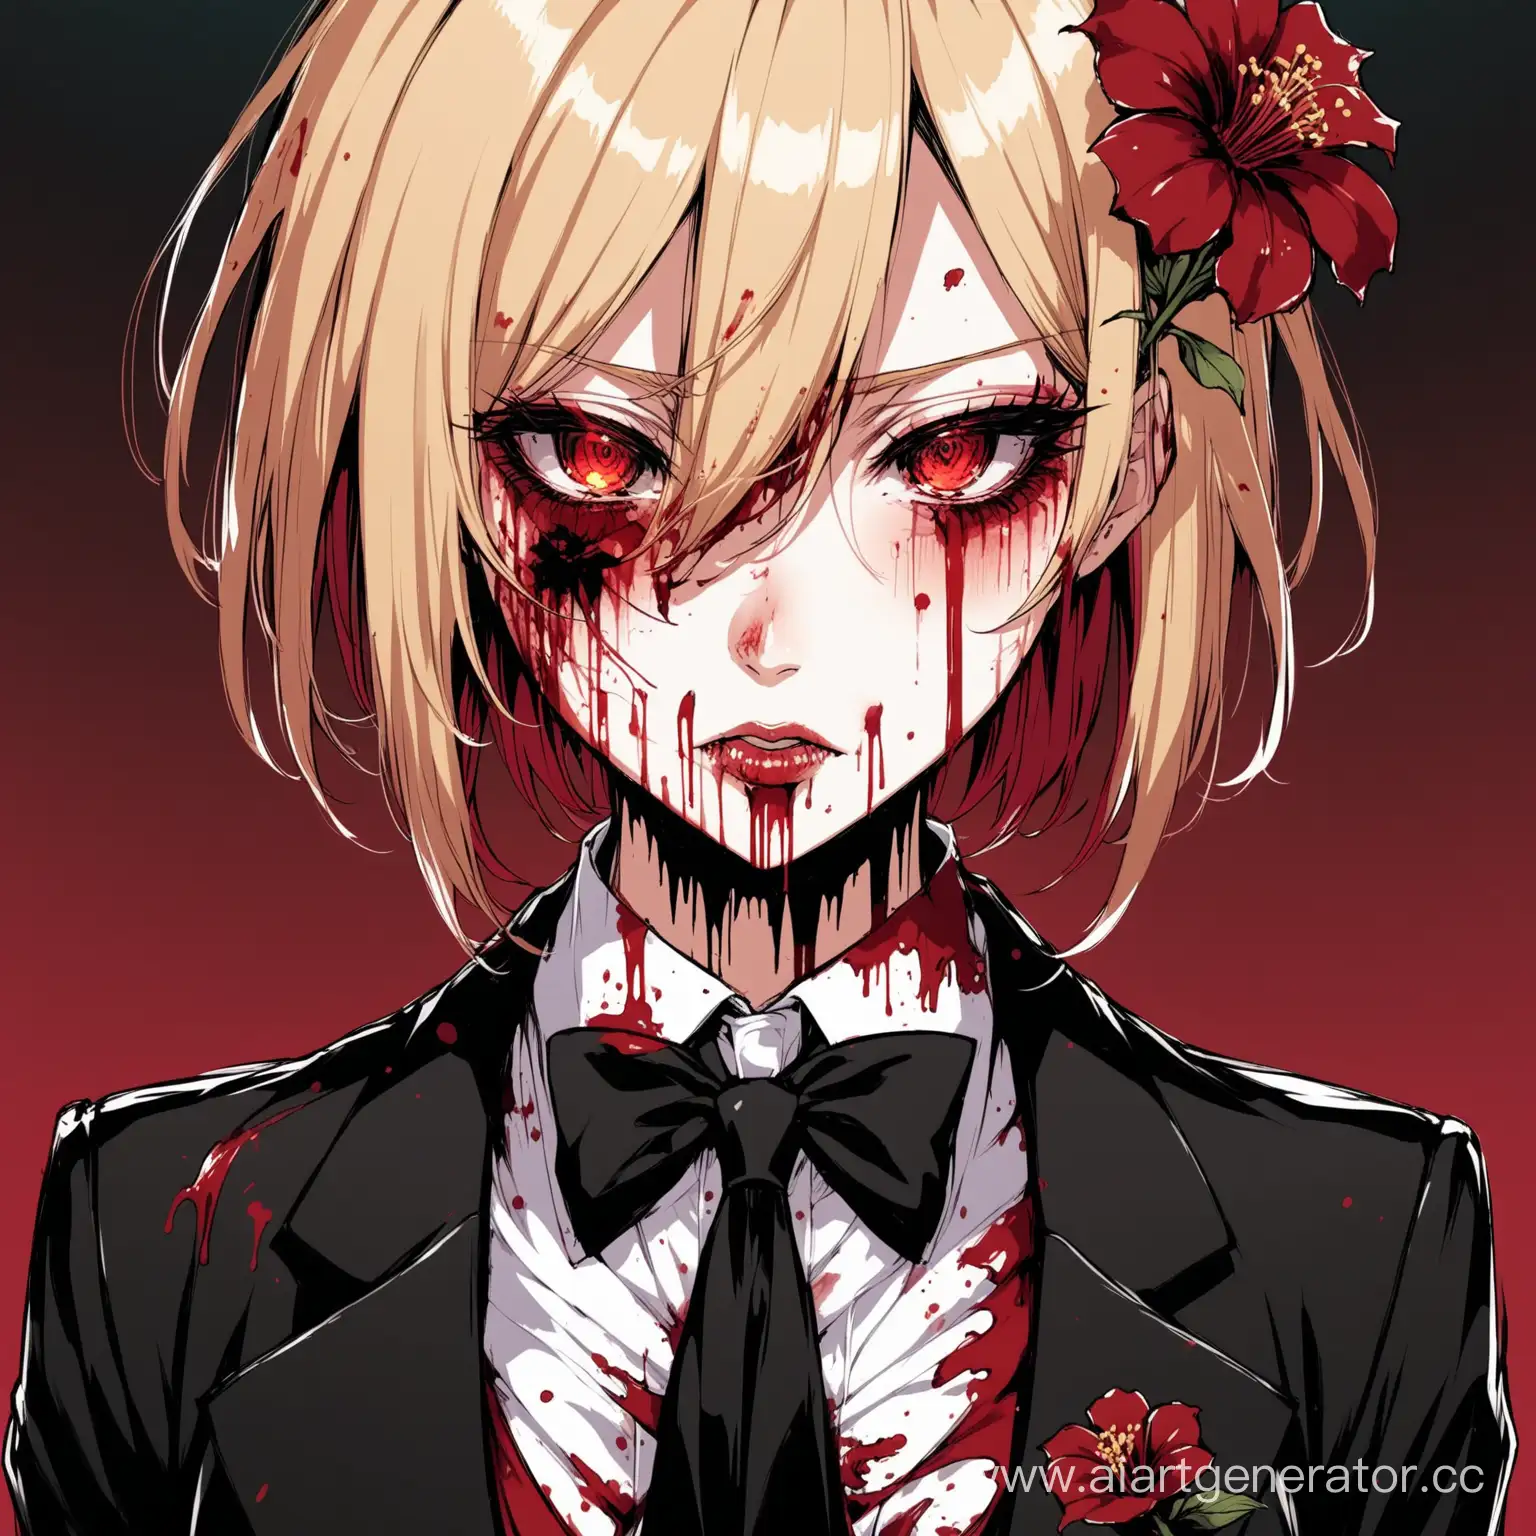 Женский персонаж в аниме стиле в окровавленном смокинге и черном галстуке и с цветком хиганбана. Также с подтеками крови между глаз и губ.